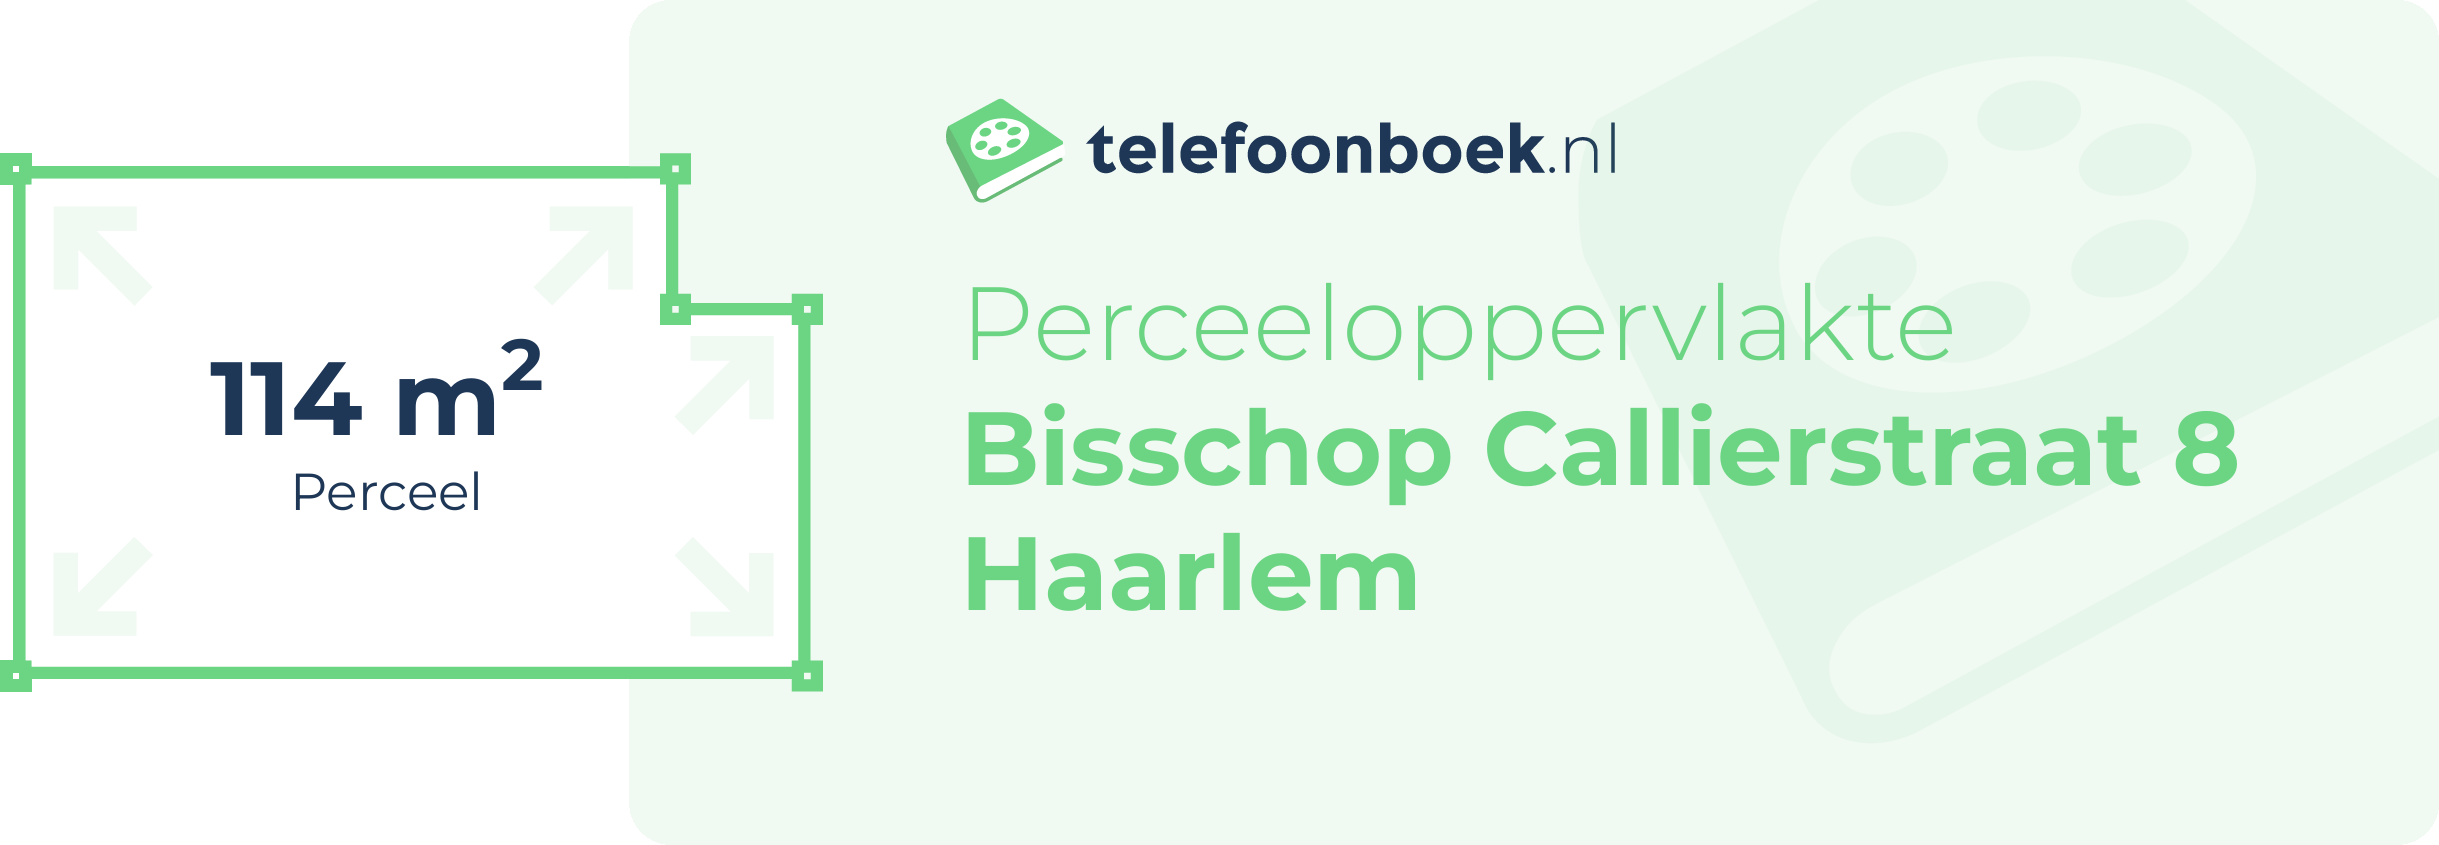 Perceeloppervlakte Bisschop Callierstraat 8 Haarlem